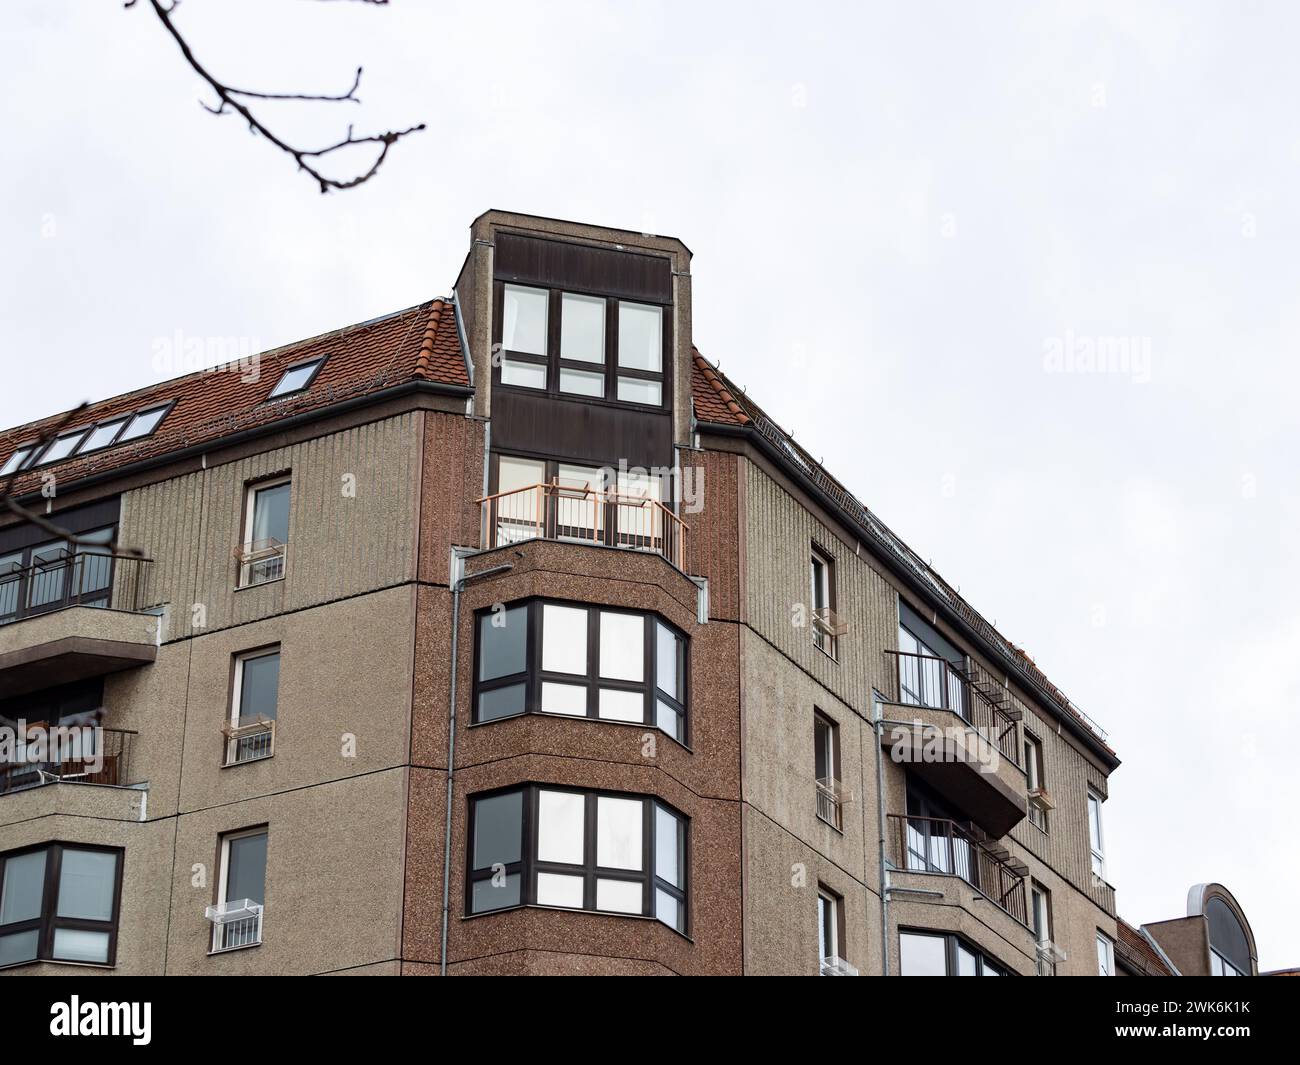 Architecture du bâtiment de Berlin est dans un quartier résidentiel. La façade est réalisée à partir de béton agrégé exposé à partir des éléments préfabriqués. Banque D'Images